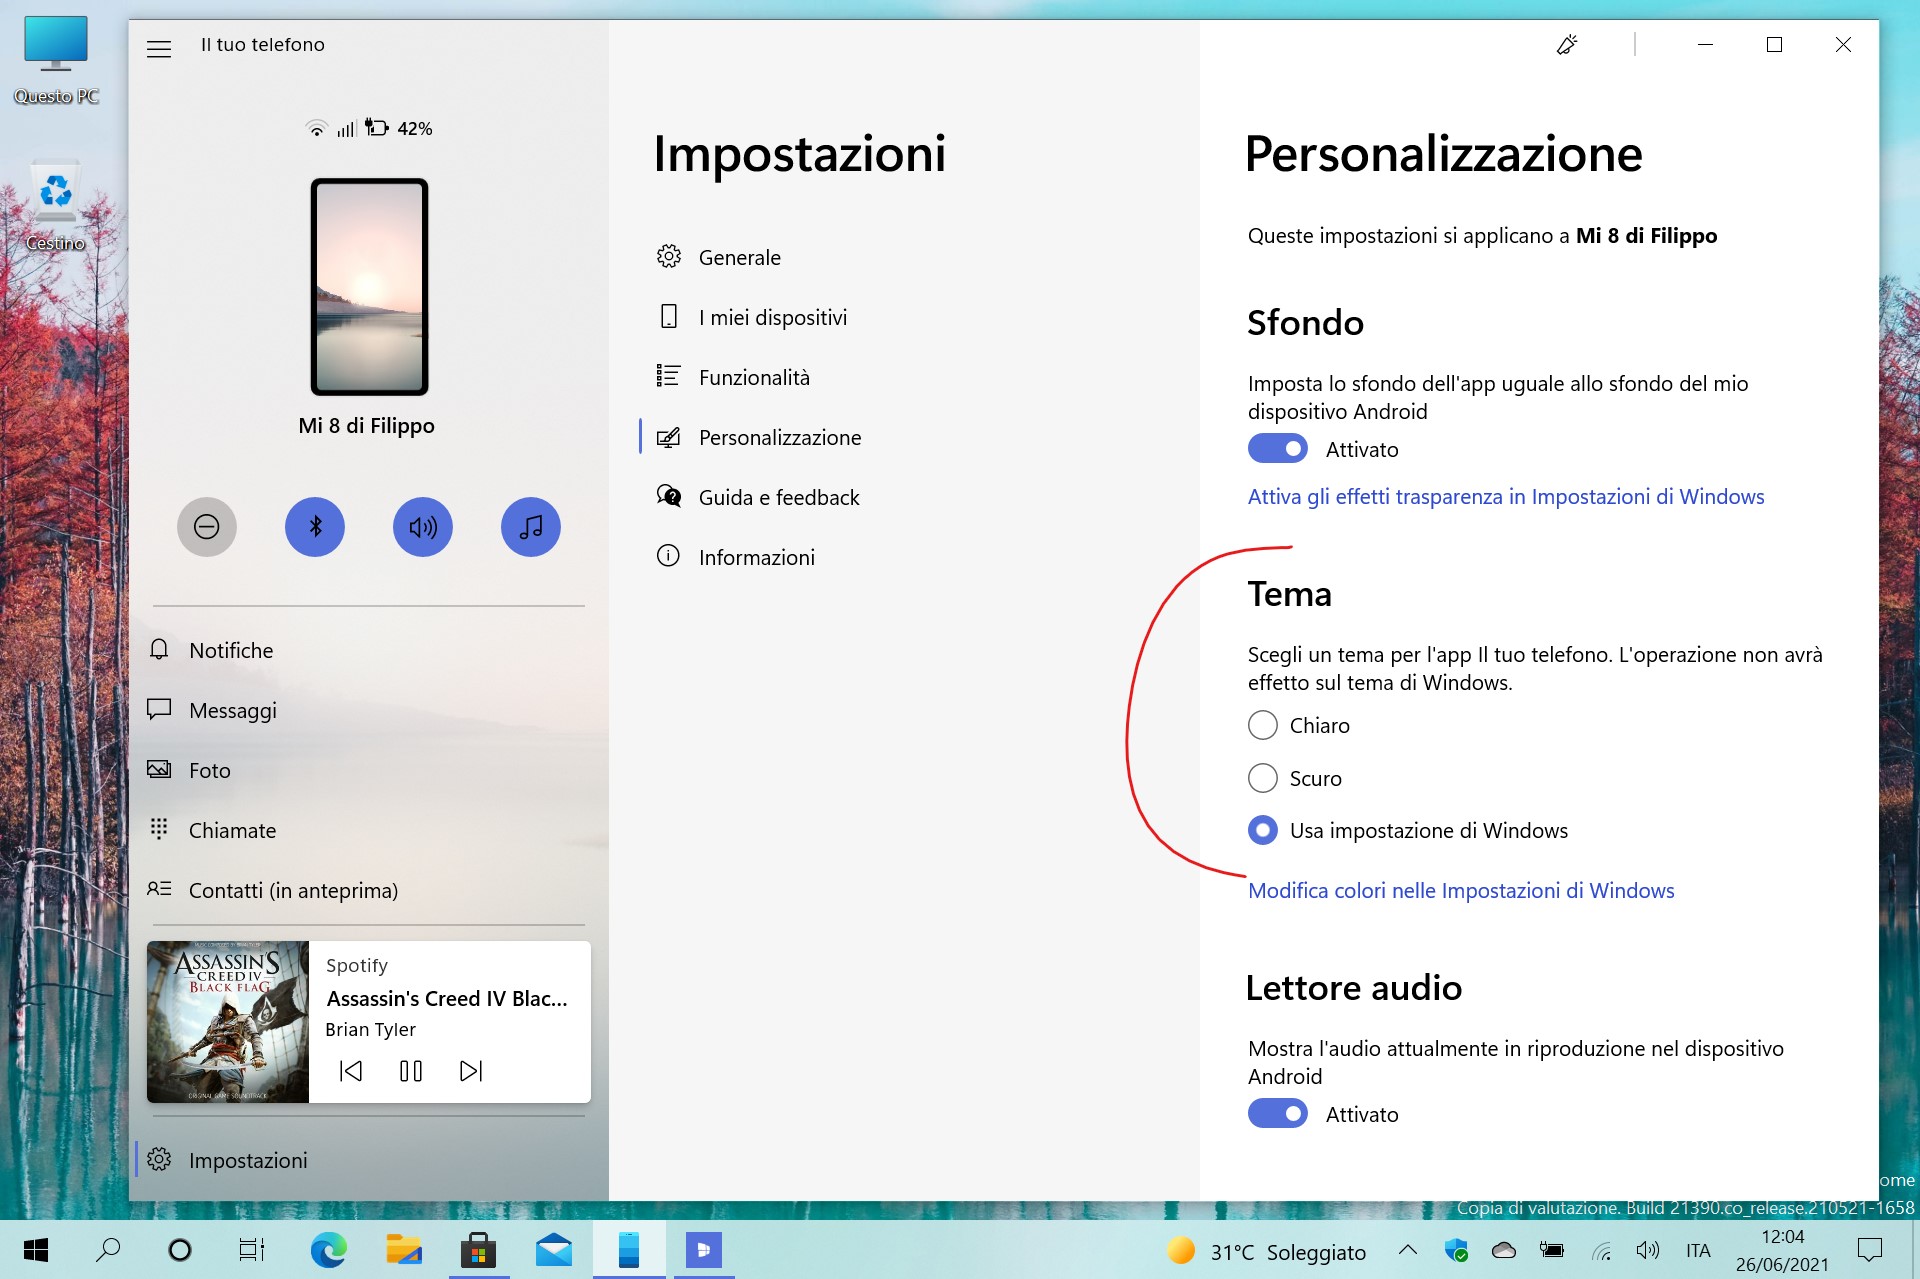 Il tuo telefono (Your Phone) per Windows - Impostazioni personalizzazione tema